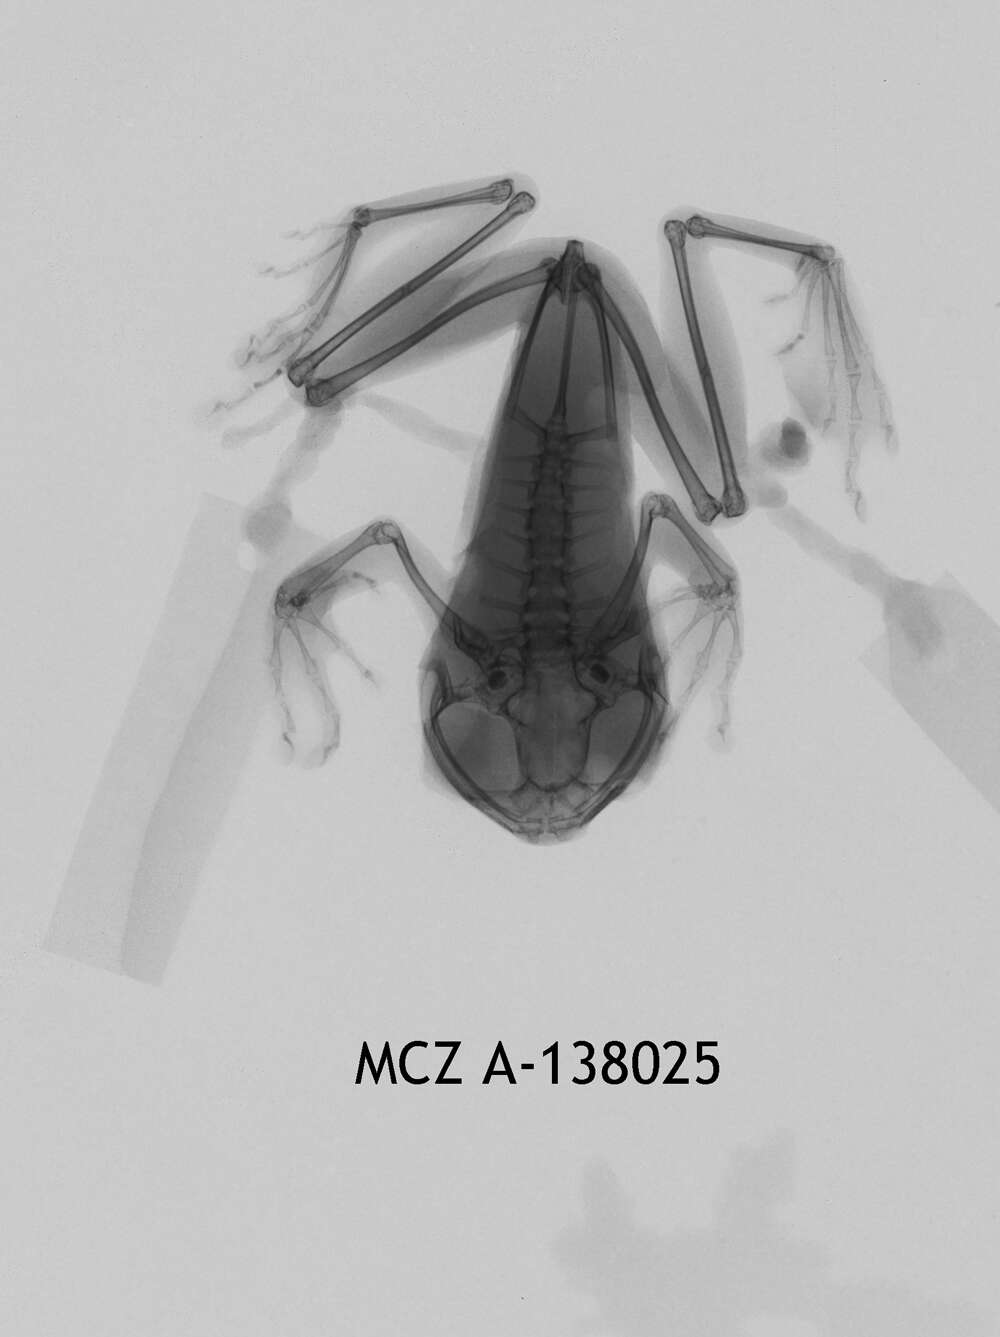 Image of Leptopelis modestus (Werner 1898)